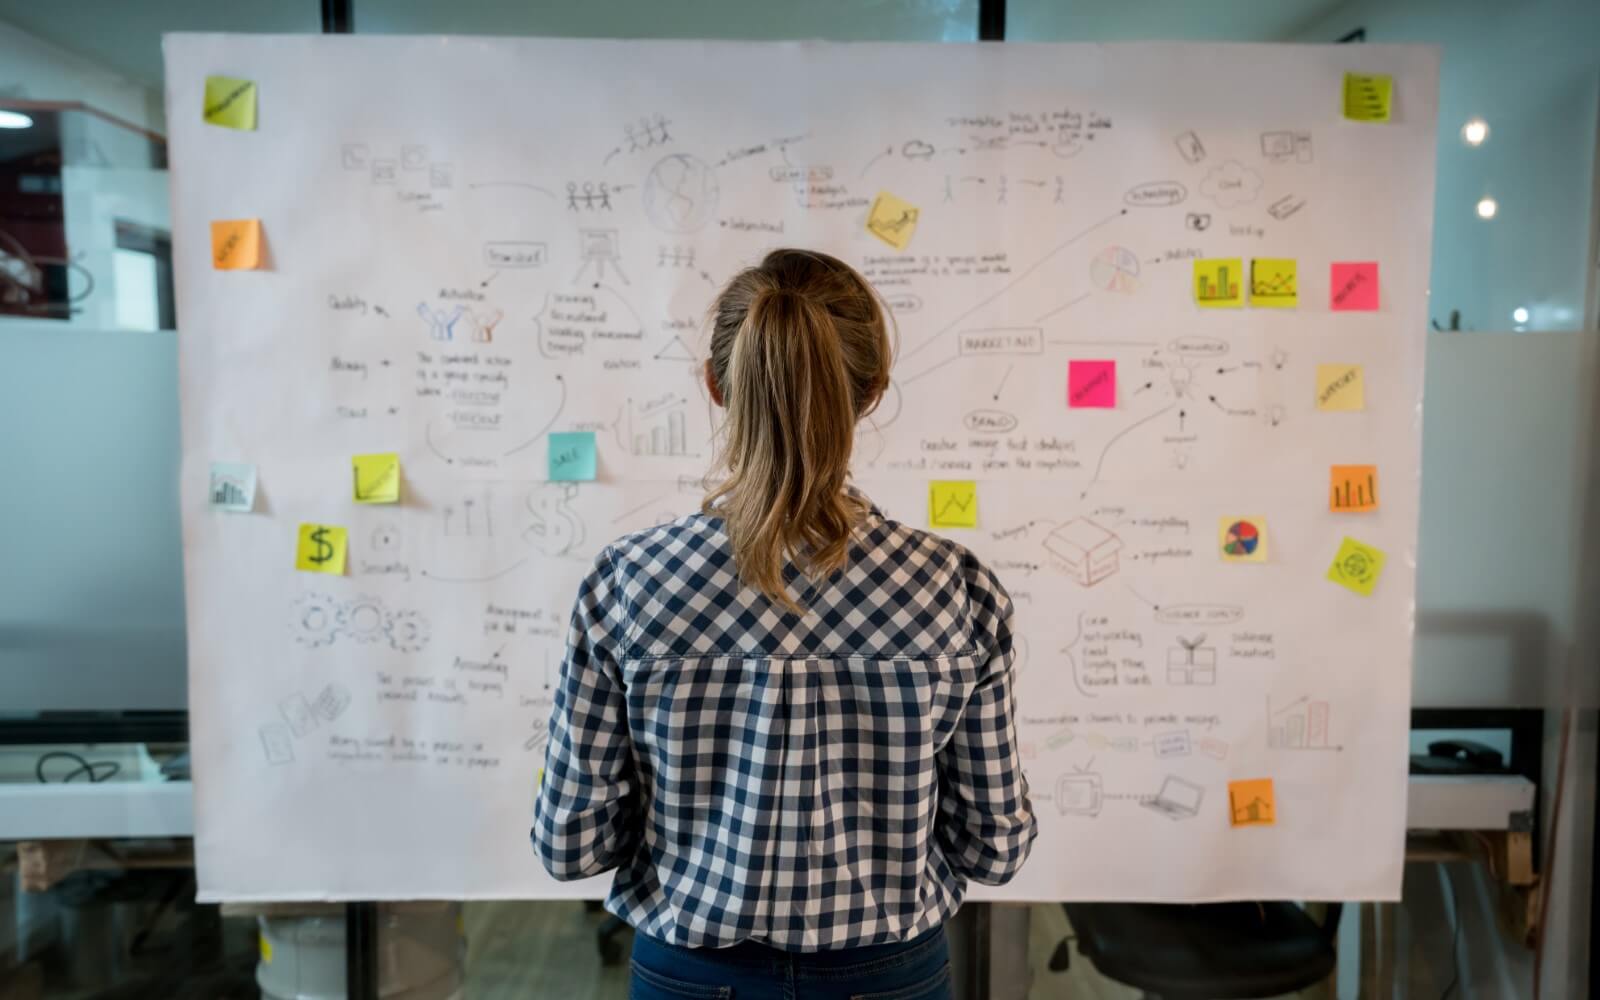 Skizzieren eines Business-Plans von einer jungen Frau an einem Whiteboard.